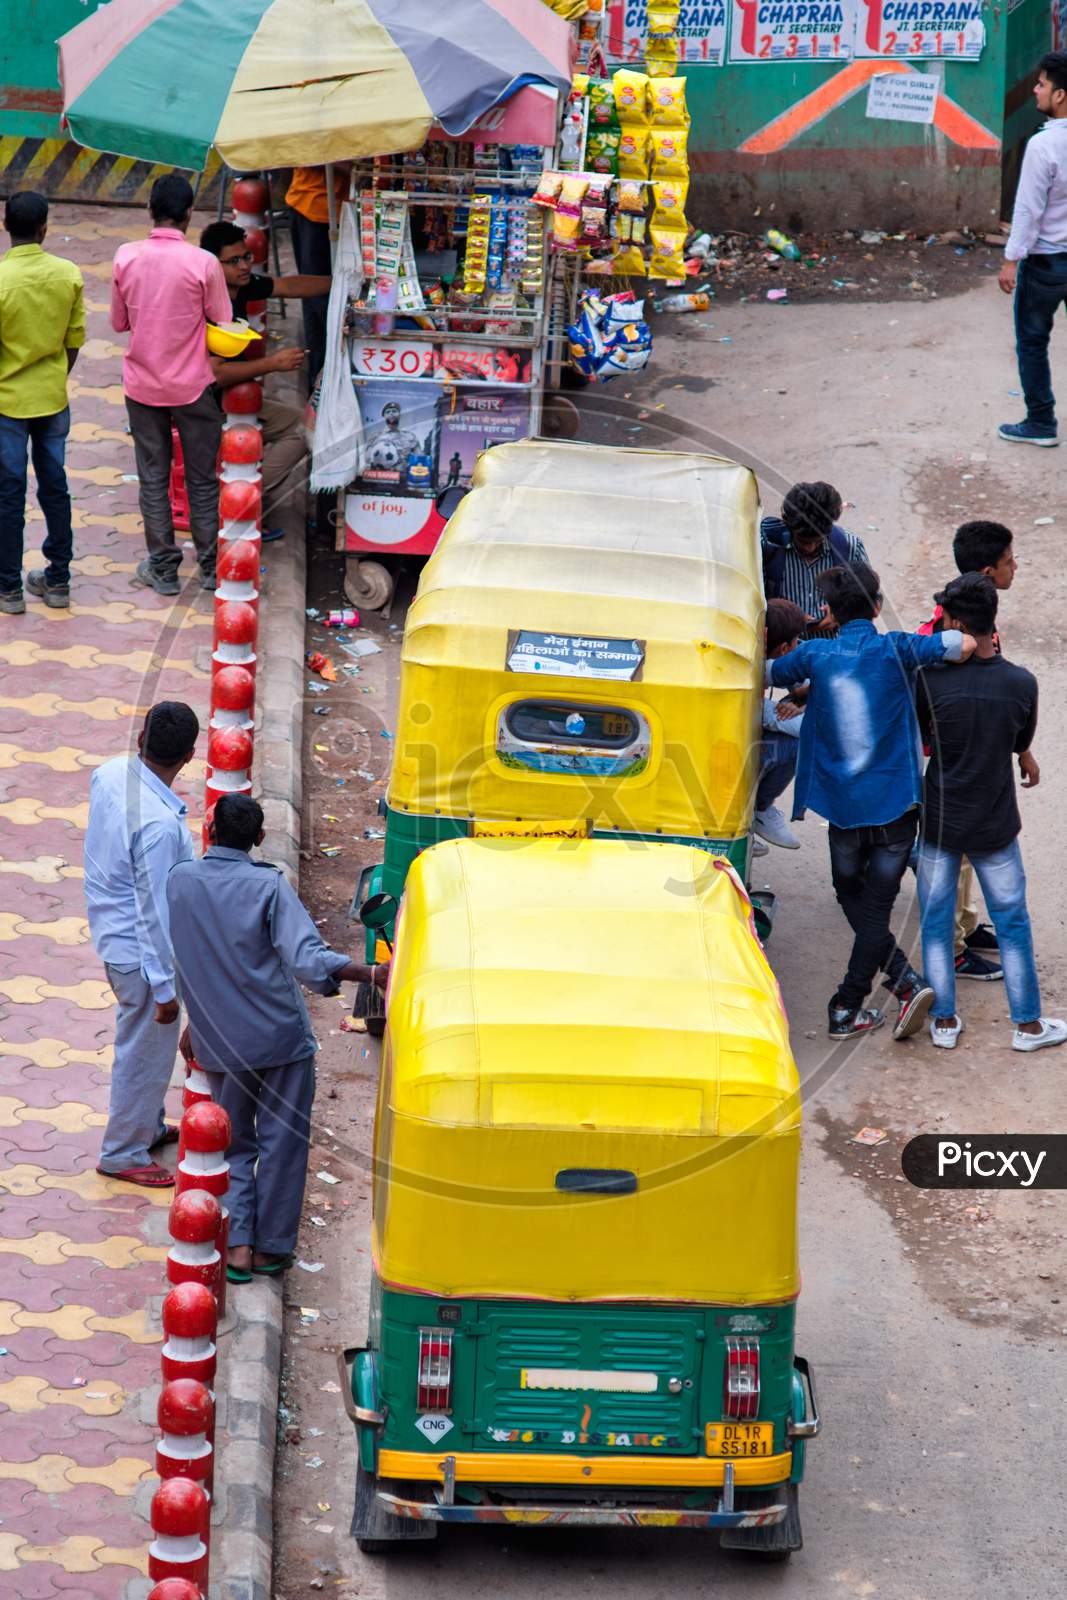 Tuk Tuks In The Streets Of New Delhi, India